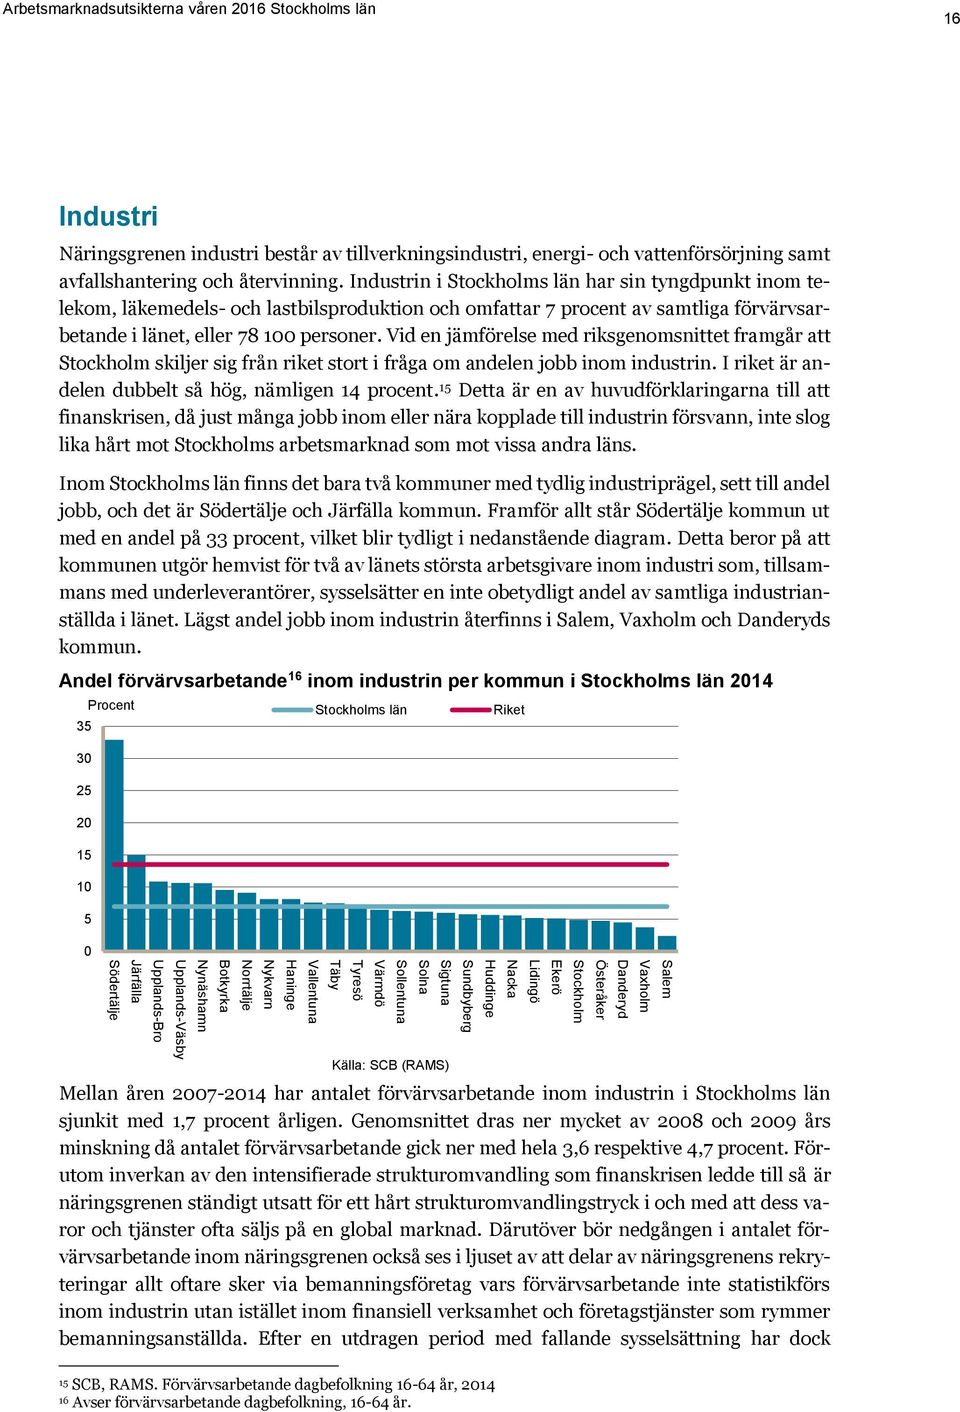 Vid en jämförelse med riksgenomsnittet framgår att Stockholm skiljer sig från riket stort i fråga om andelen jobb inom industrin. I riket är andelen dubbelt så hög, nämligen 14 procent.